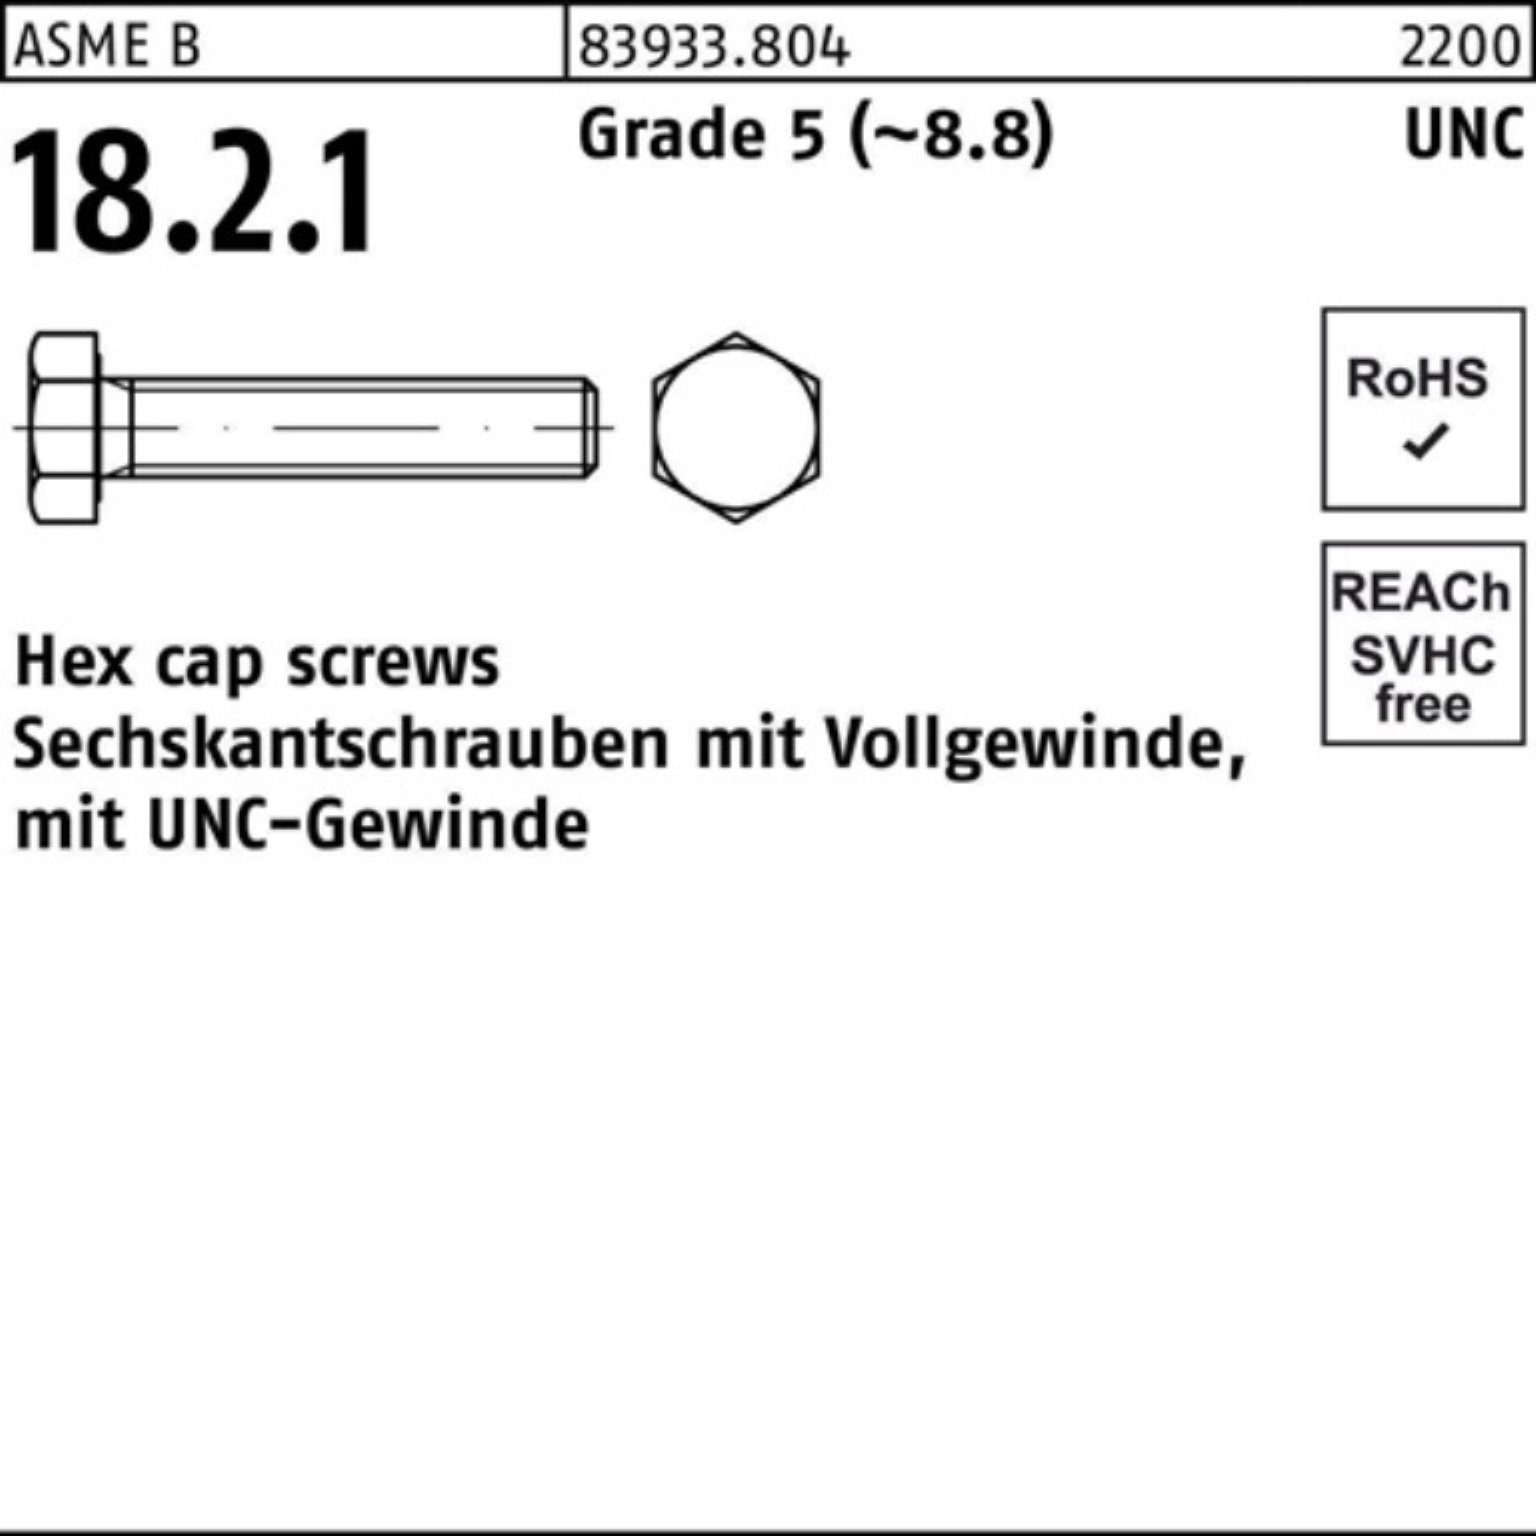 Reyher Sechskantschraube 100er Pack Sechskantschraube R 83933 UNC-Gewinde VG 1/2x 1 Grade 5 (8